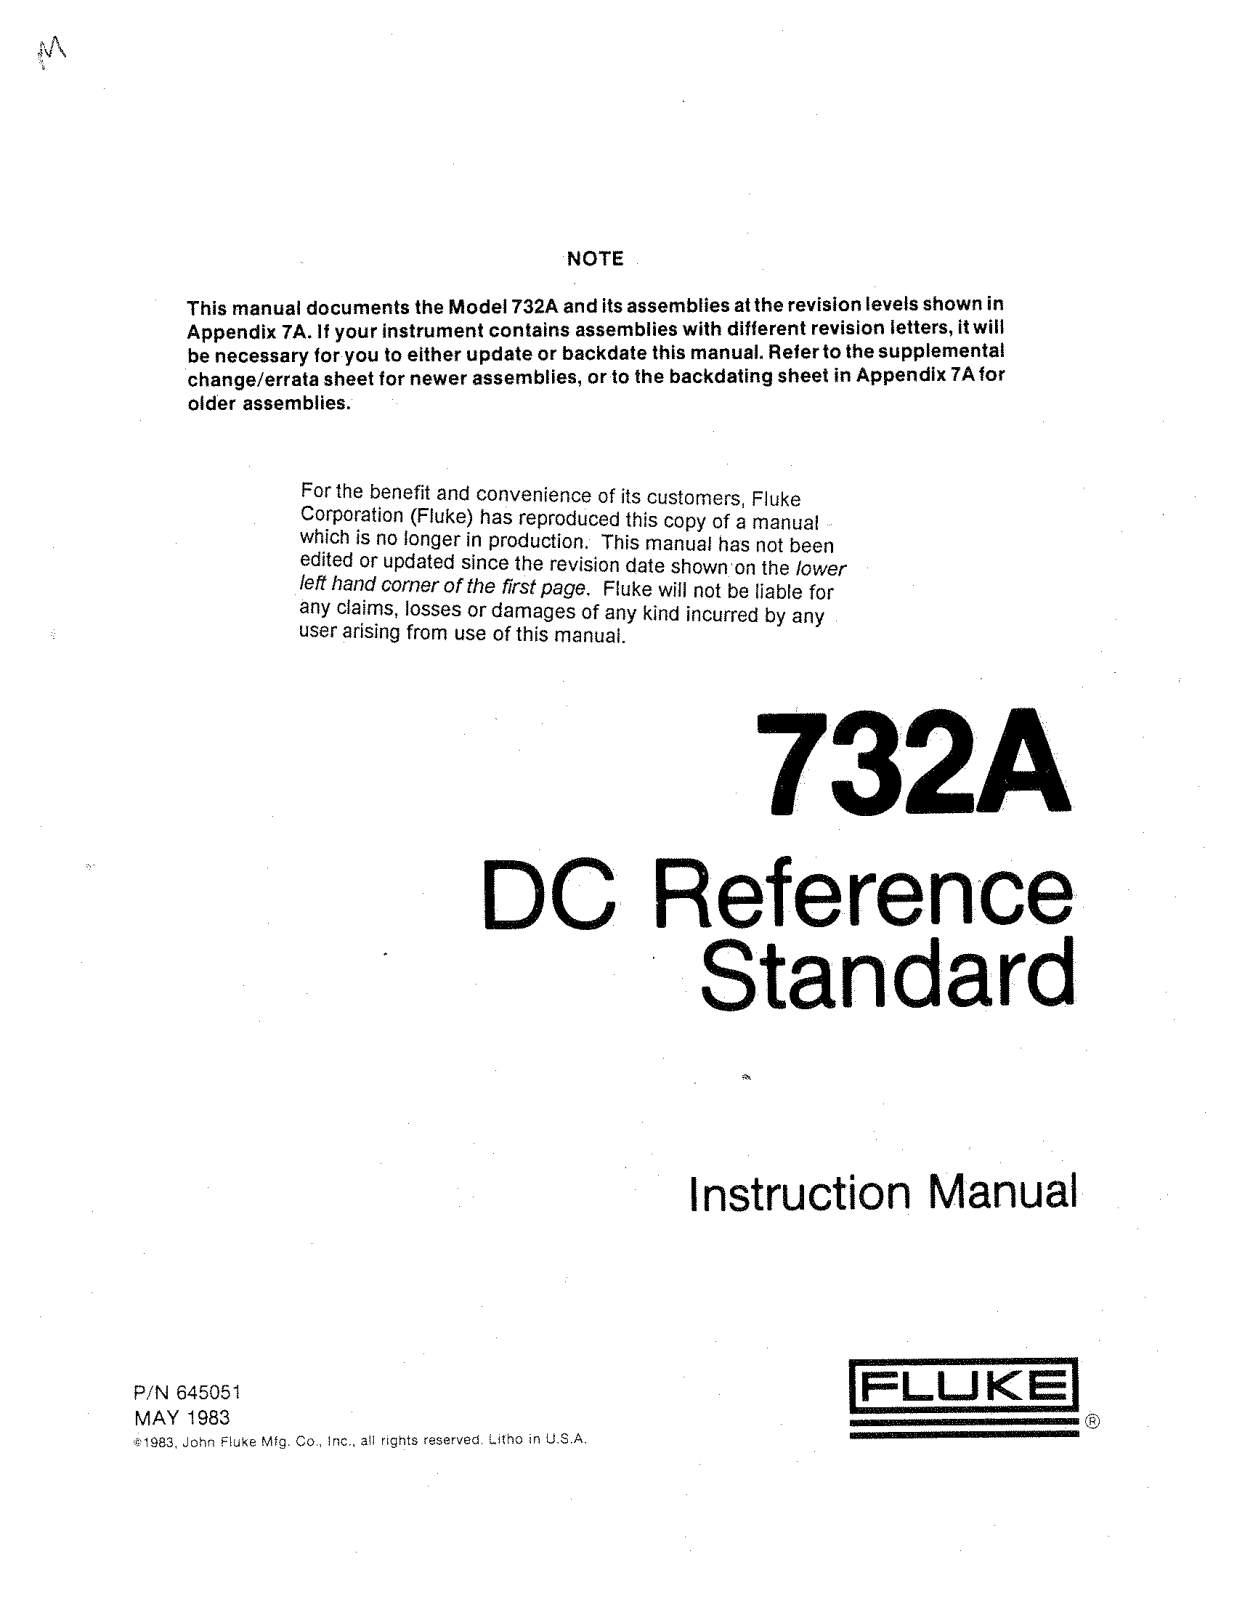 Fluke 732A Service manual